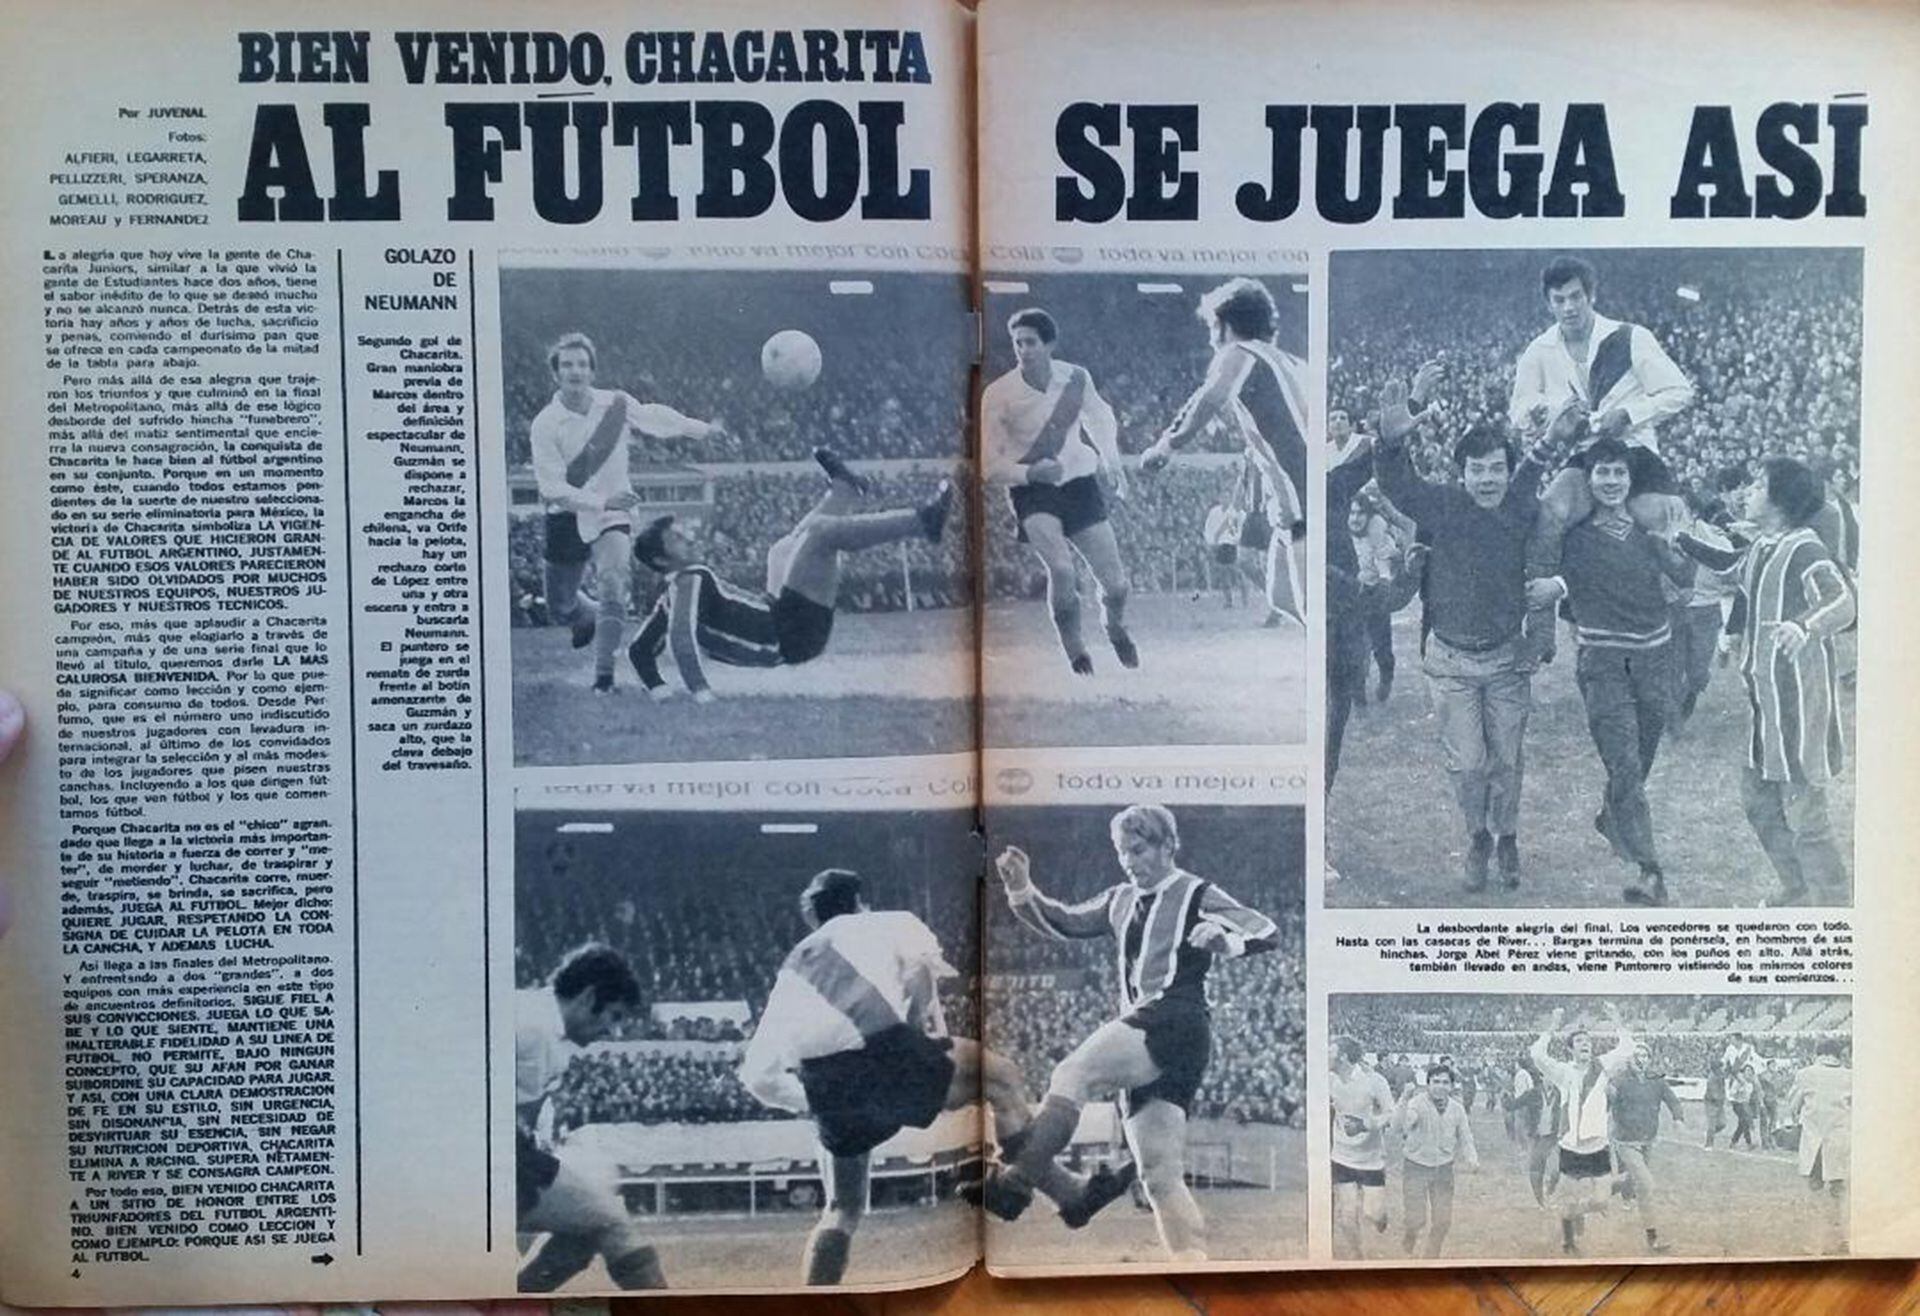 Diario de la época que habla de lo bien que jugaba Chacarita en 1969